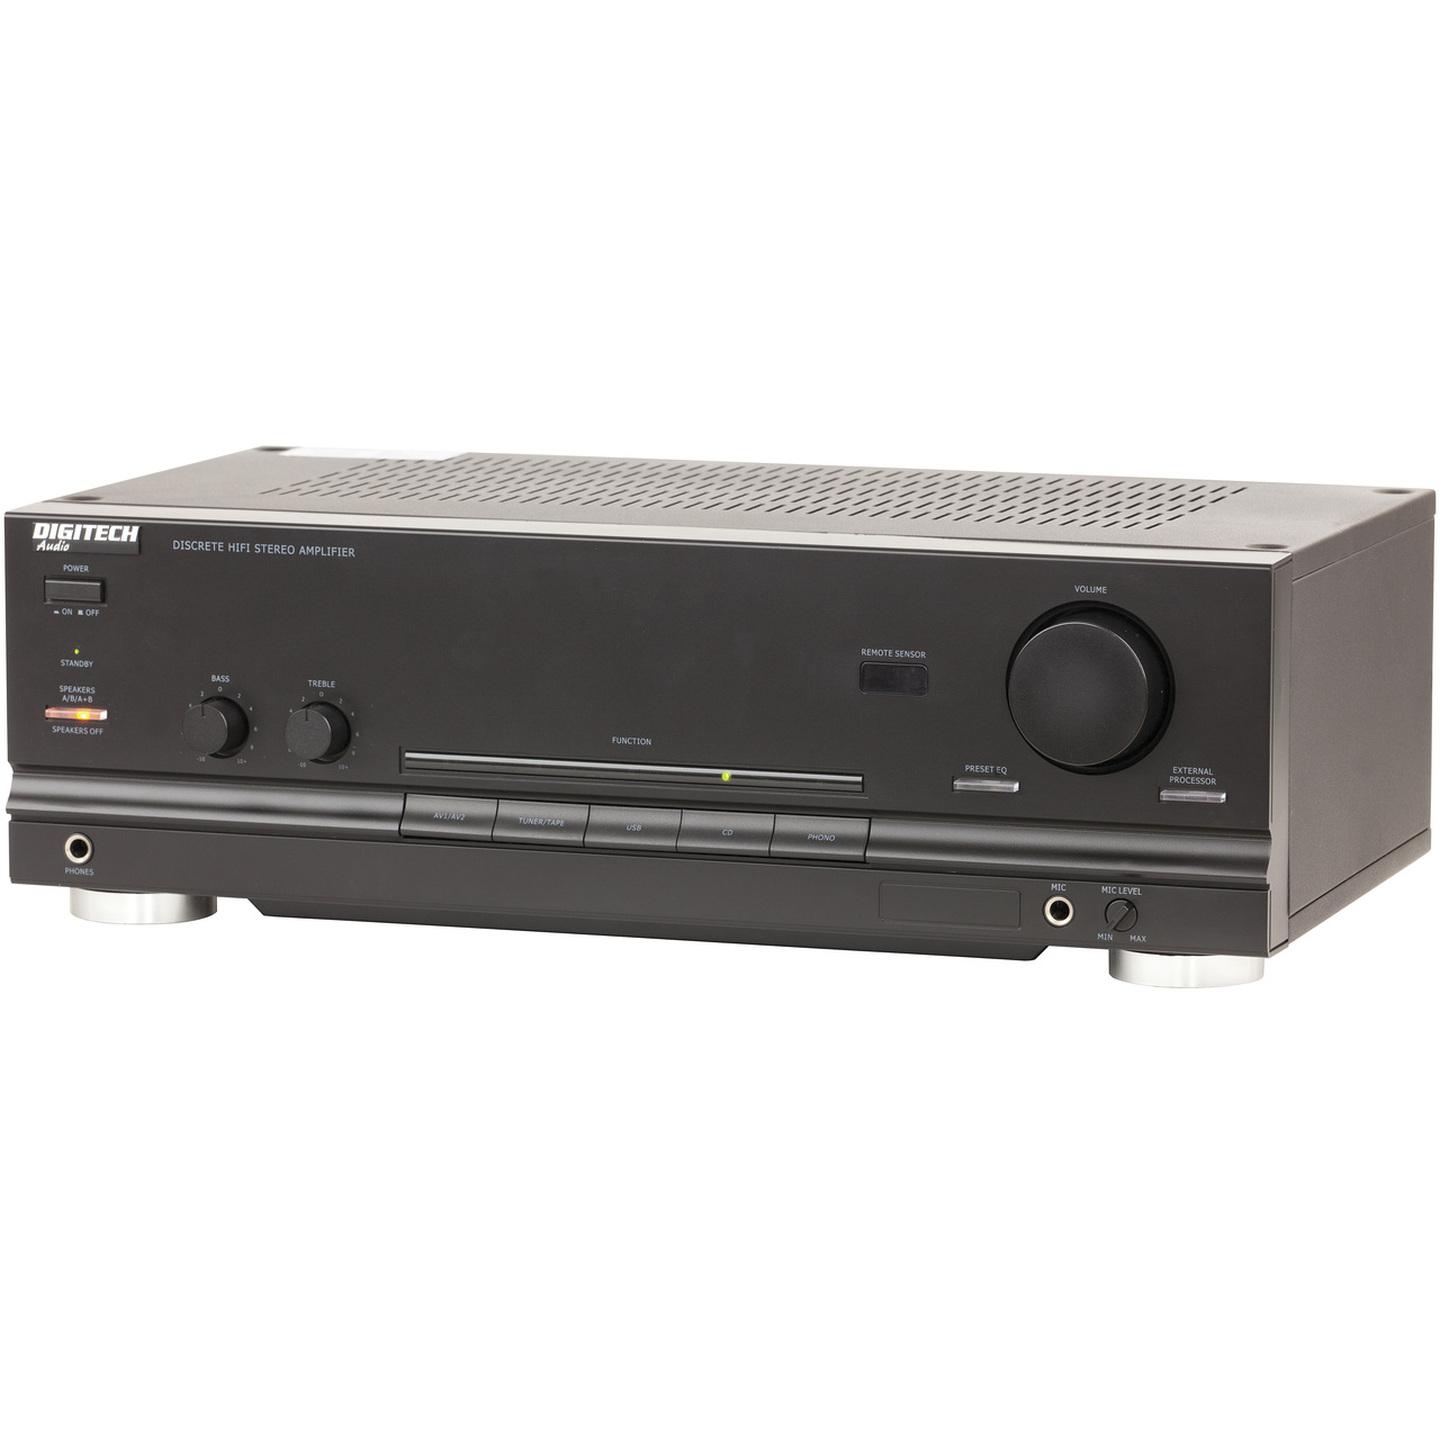 200WRMS Per Channel Stereo Amplifier